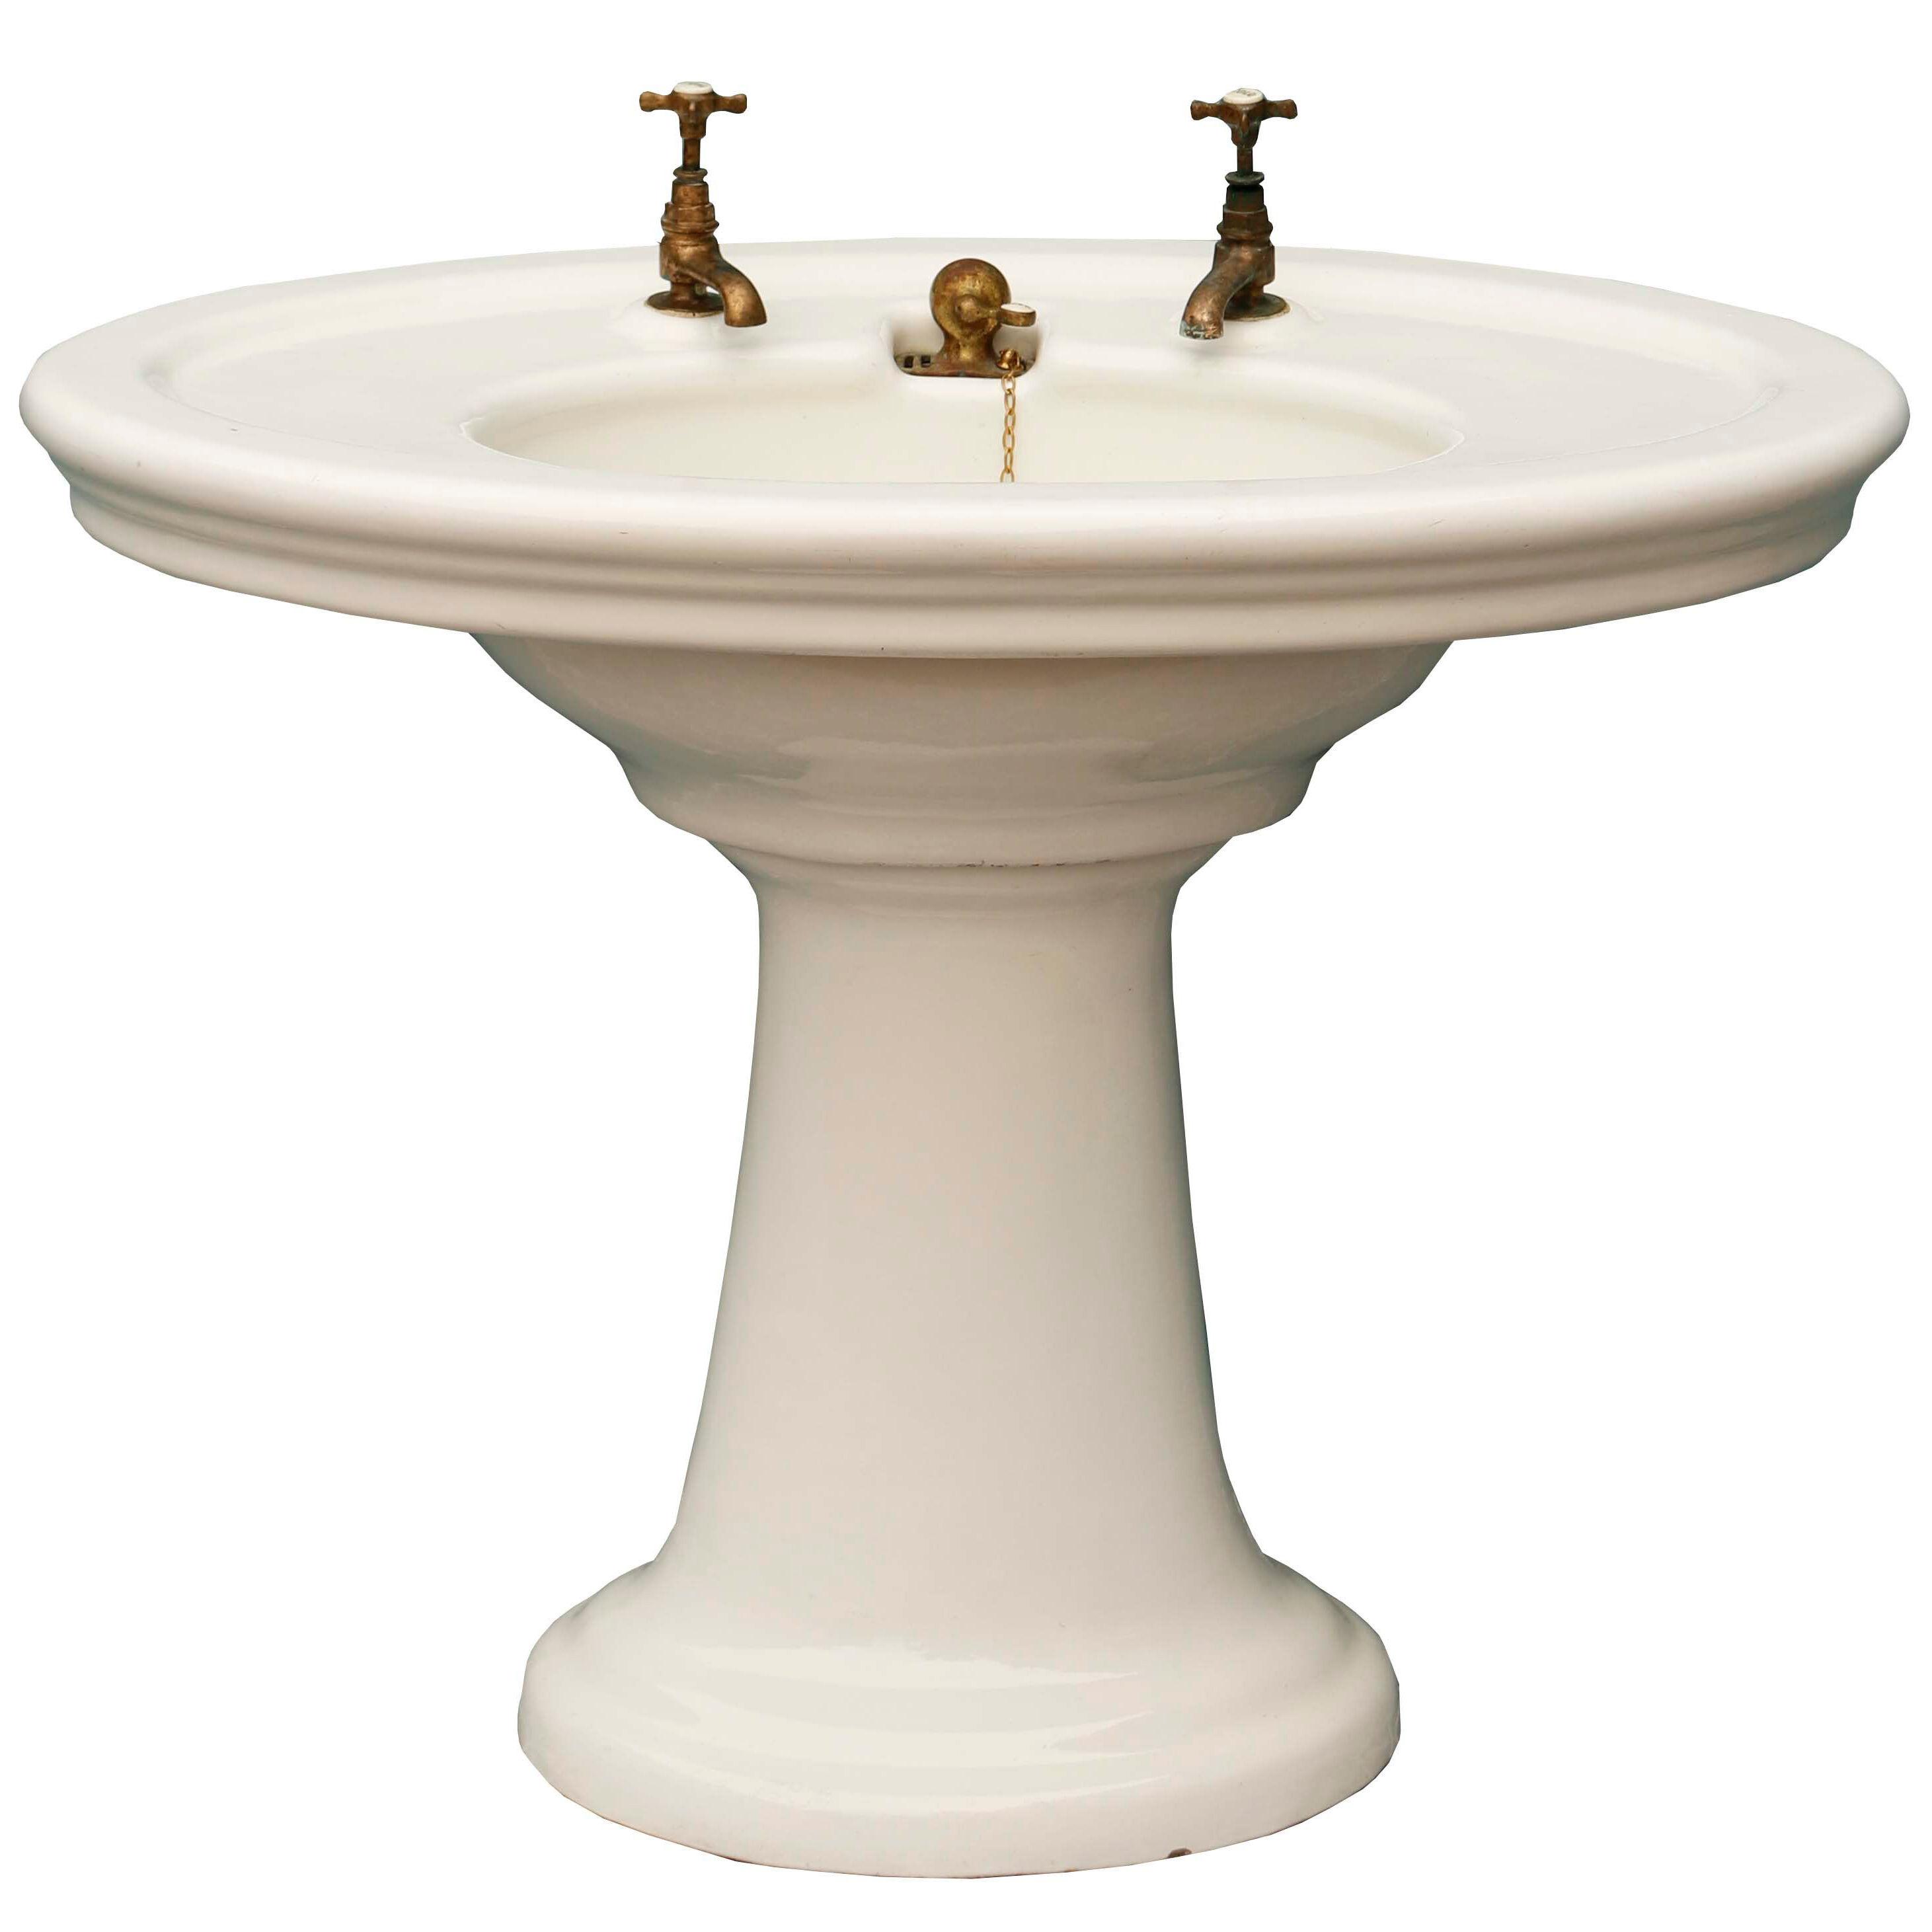 Antique Oval Shaped Pedestal Sink